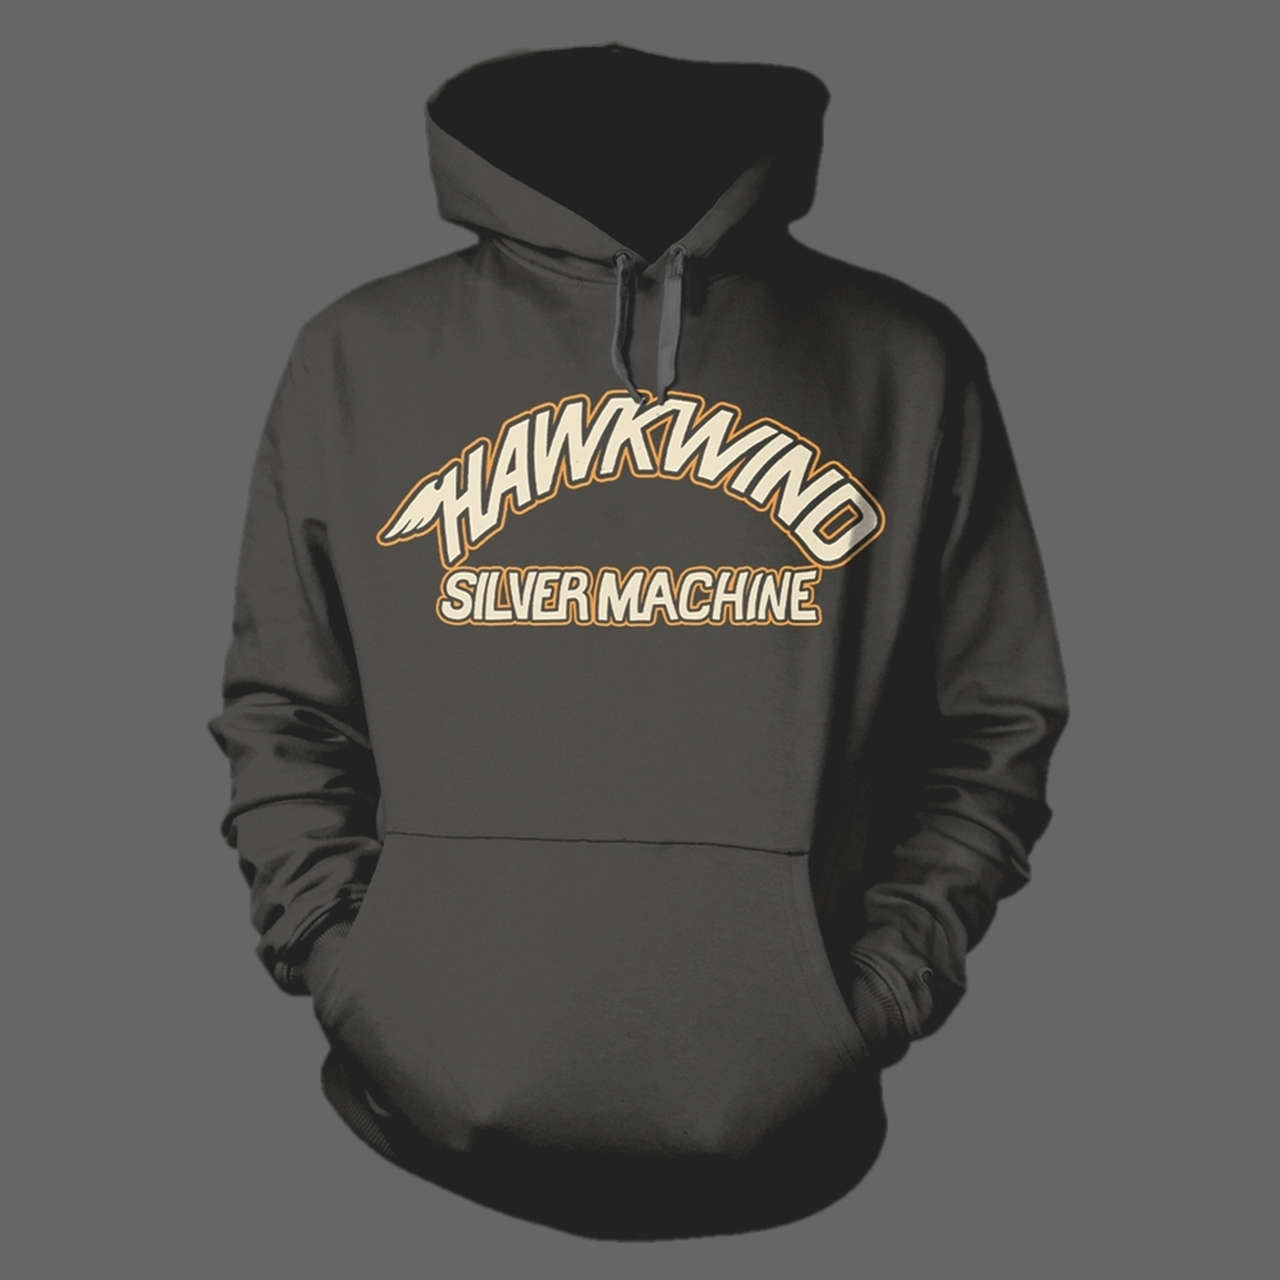 Hawkwind - Silver Machine (Charcoal) (Hoodie)